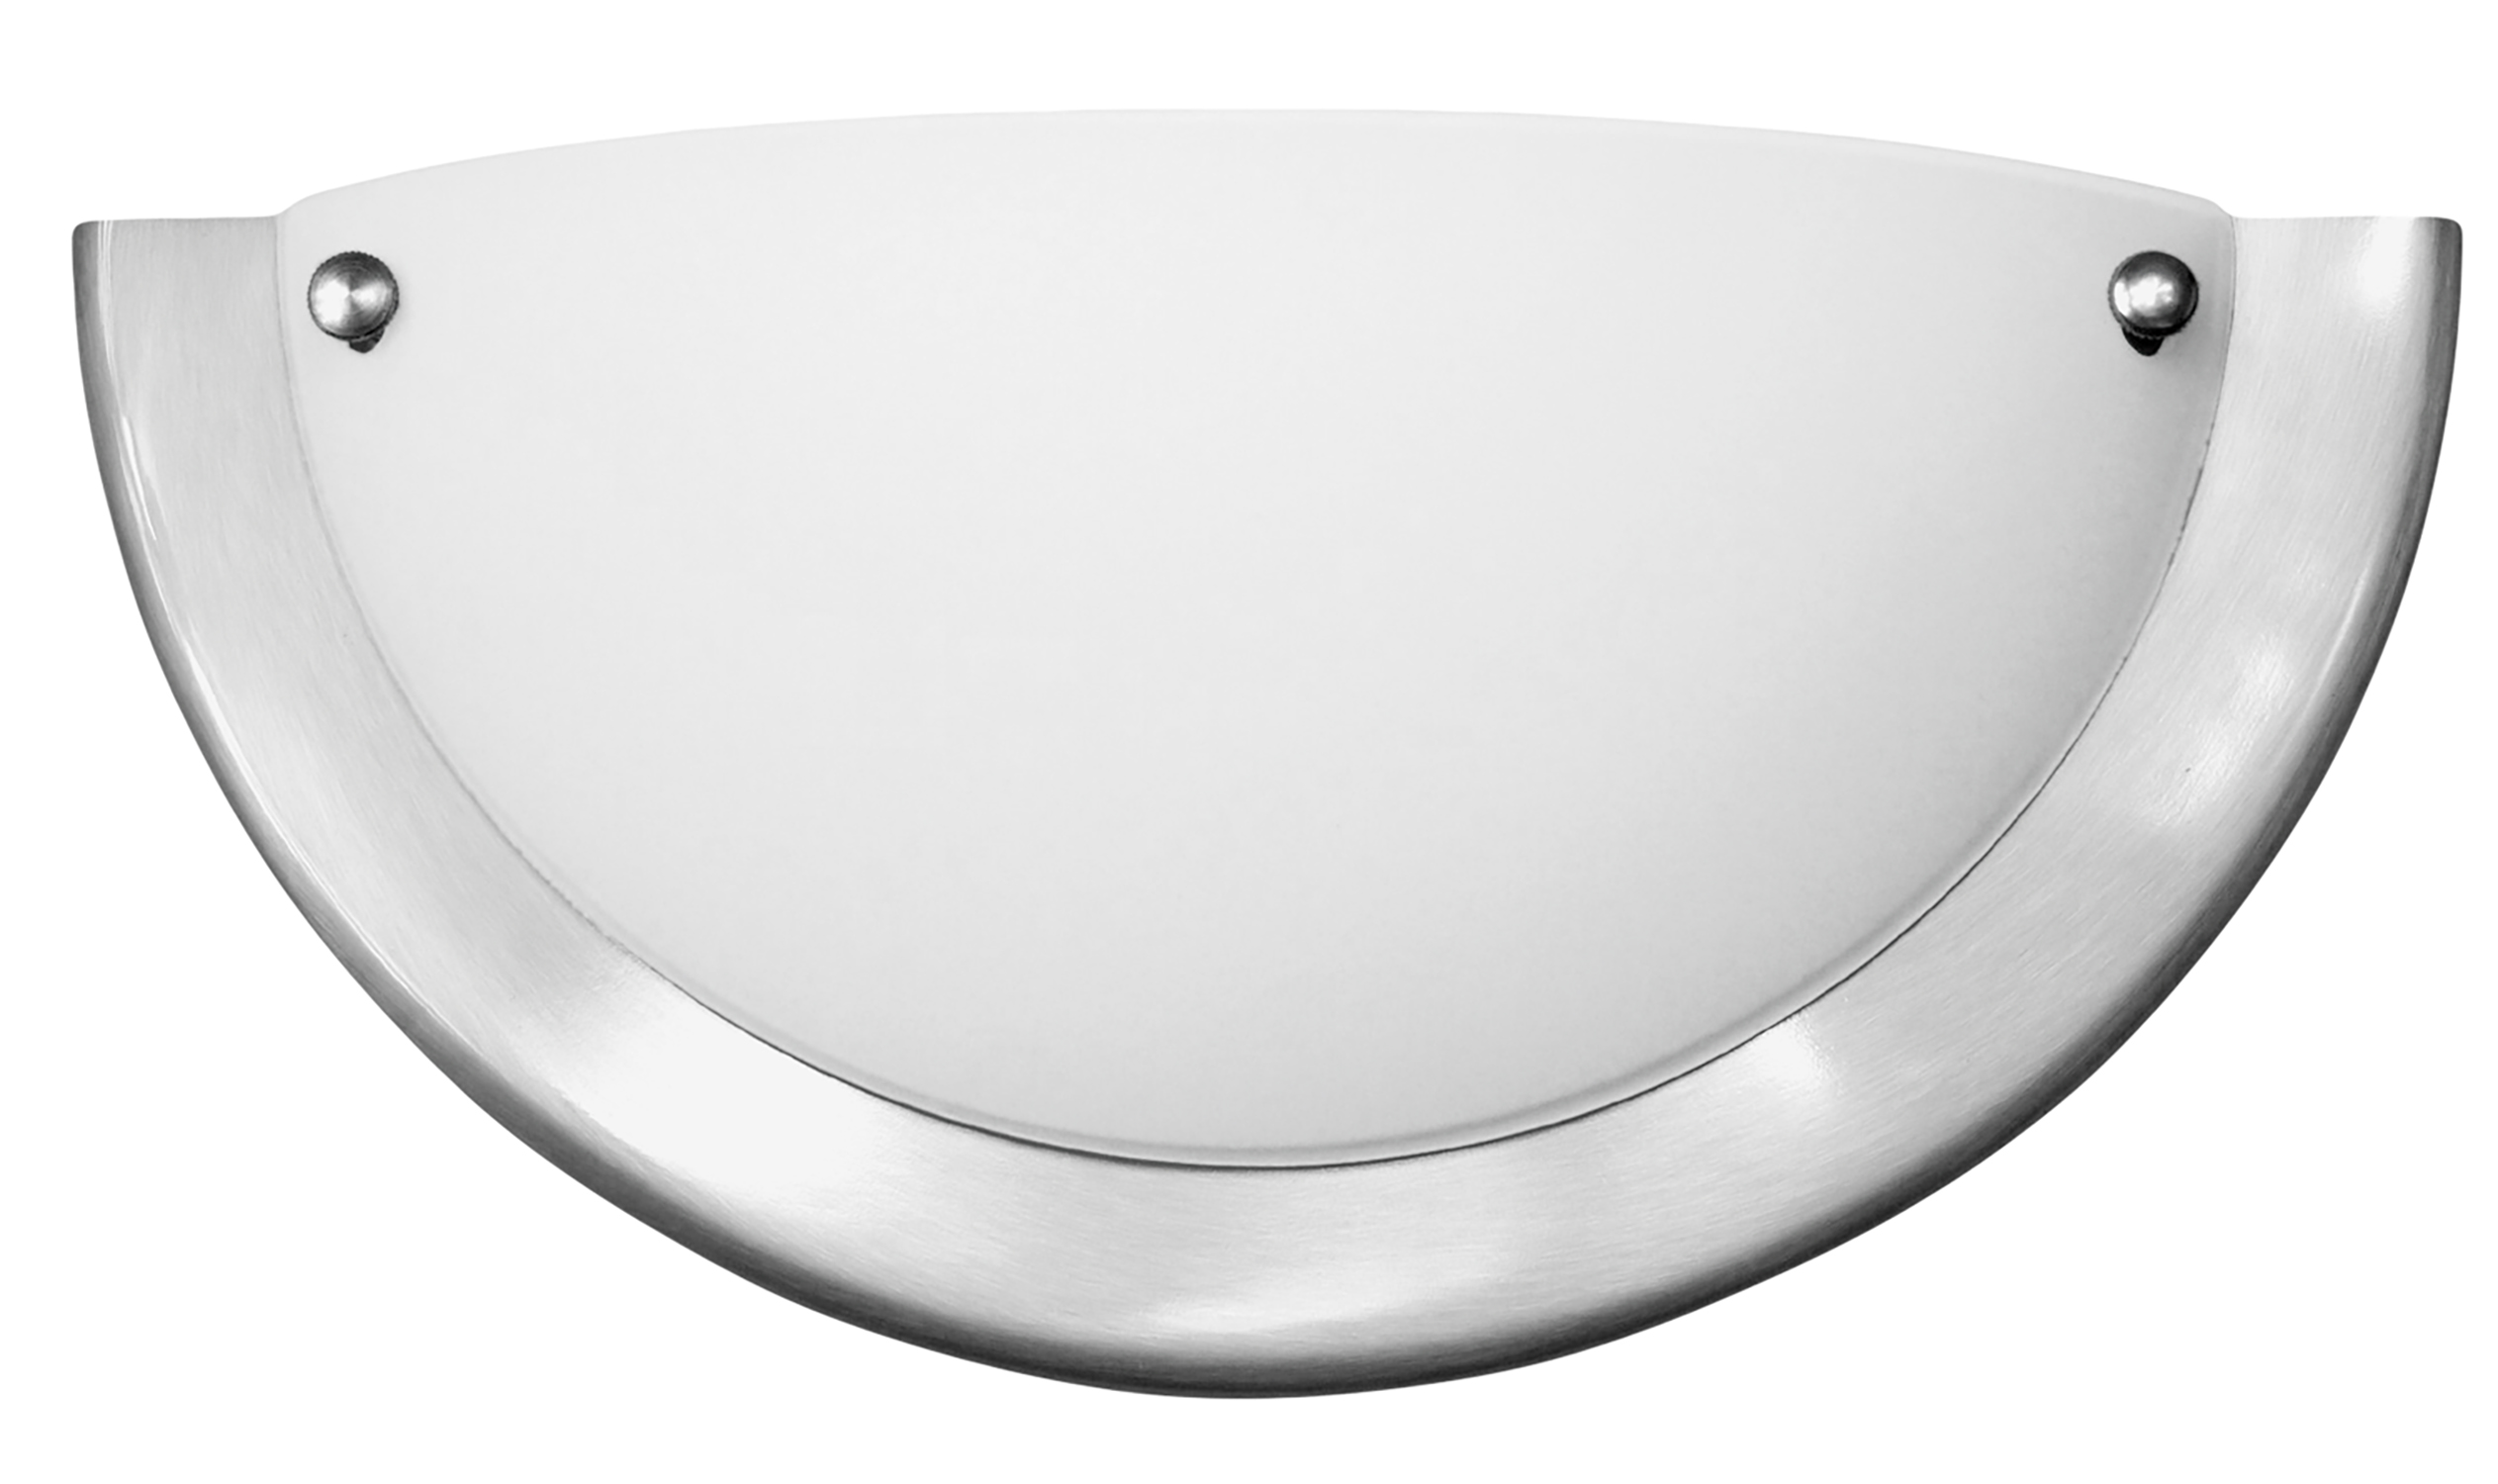 Wandleuchte Ufo 5181, E27, Metall, silber-weiß, rund, Standard, ø310mm